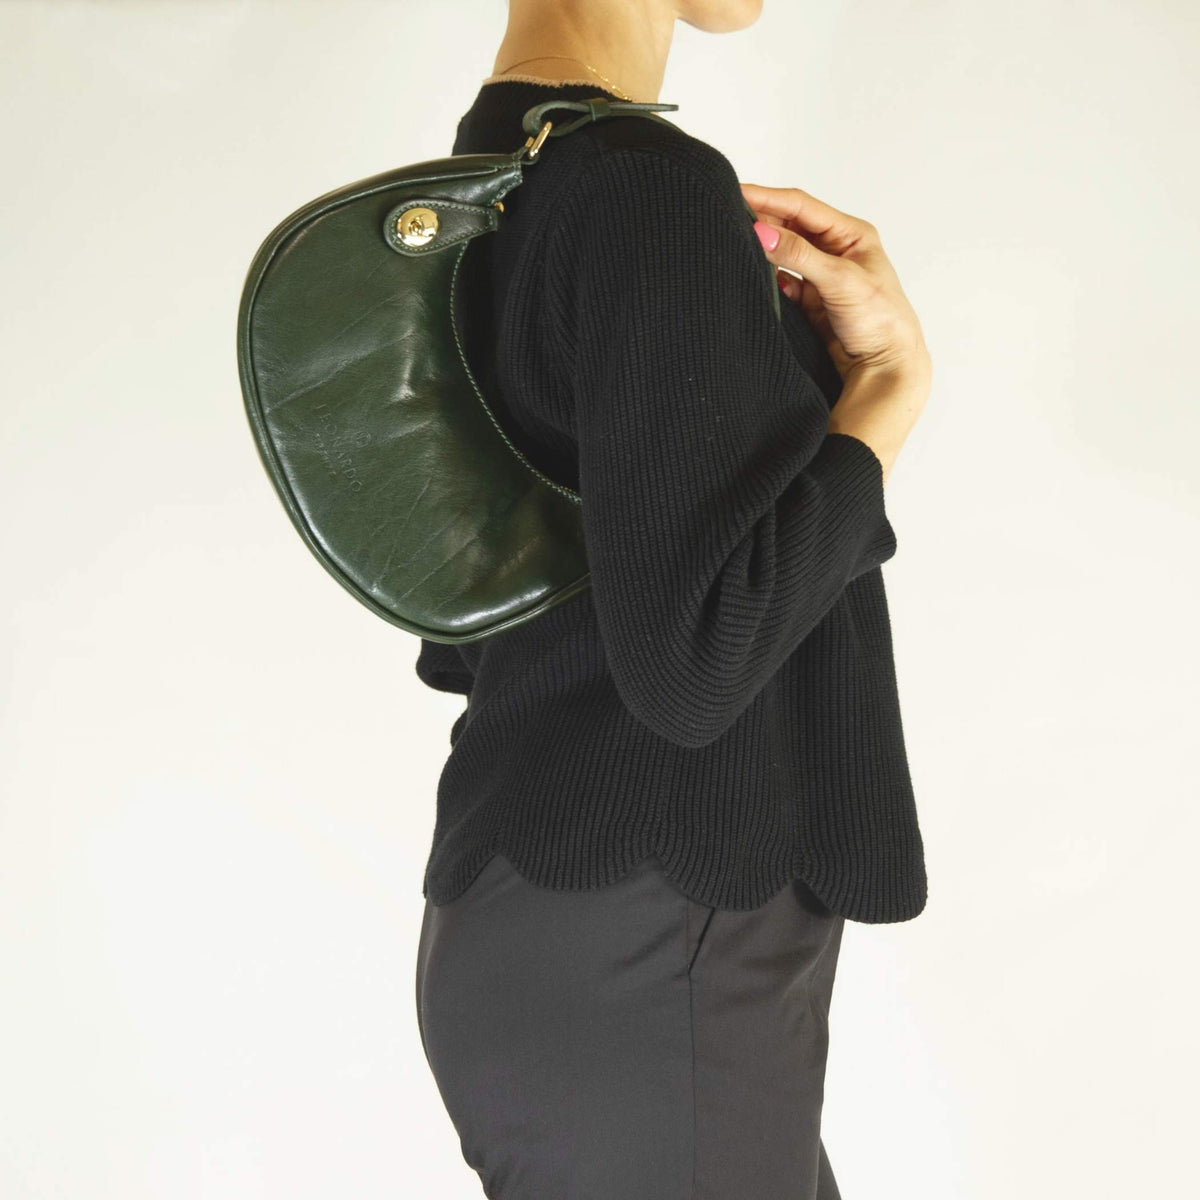 Jane leather shoulder bag with removable shoulder strap, green colour